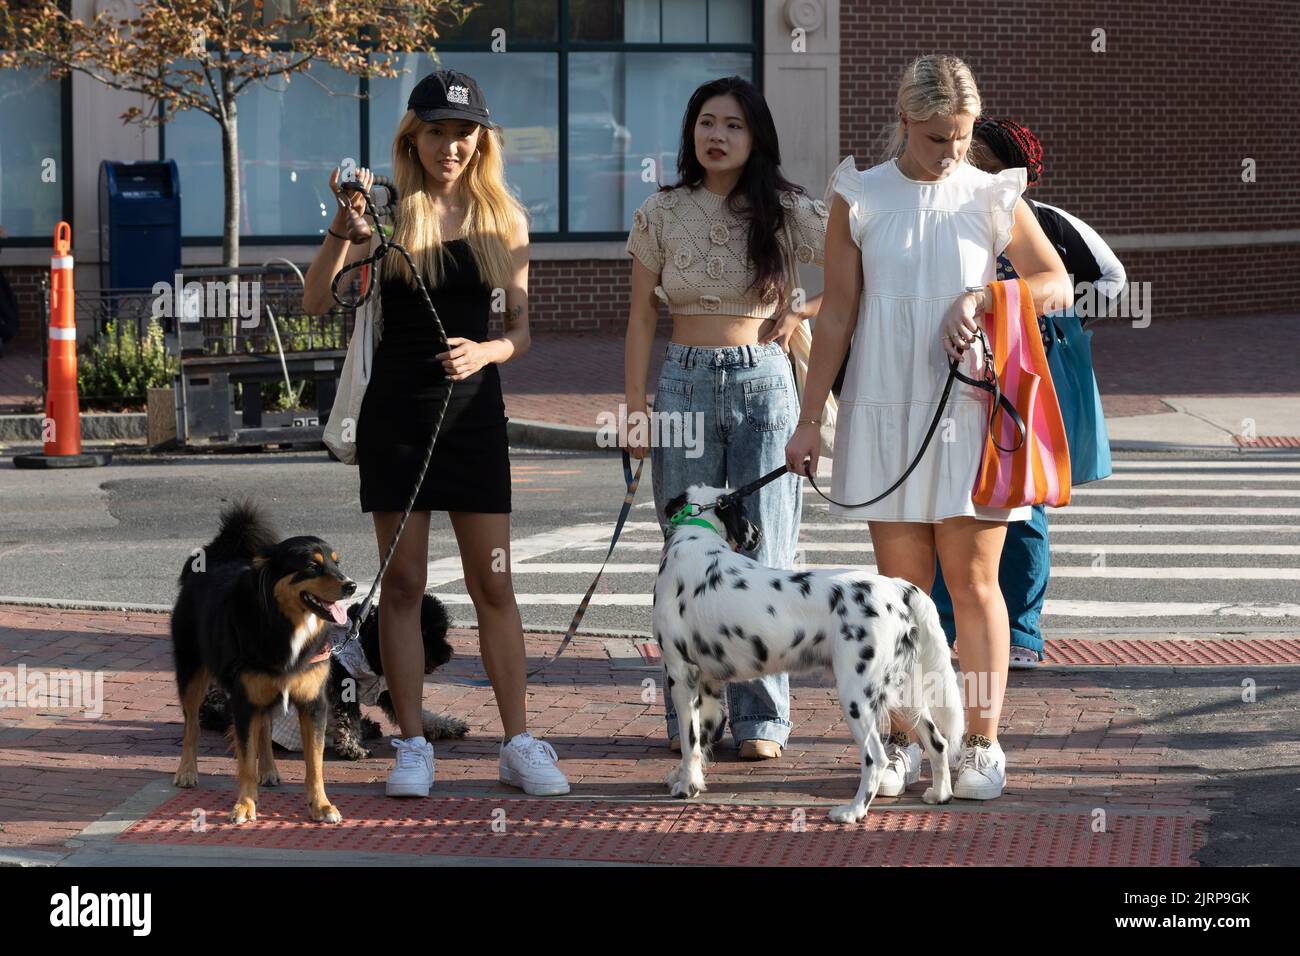 Fashionable young women walking dogs Stock Photo